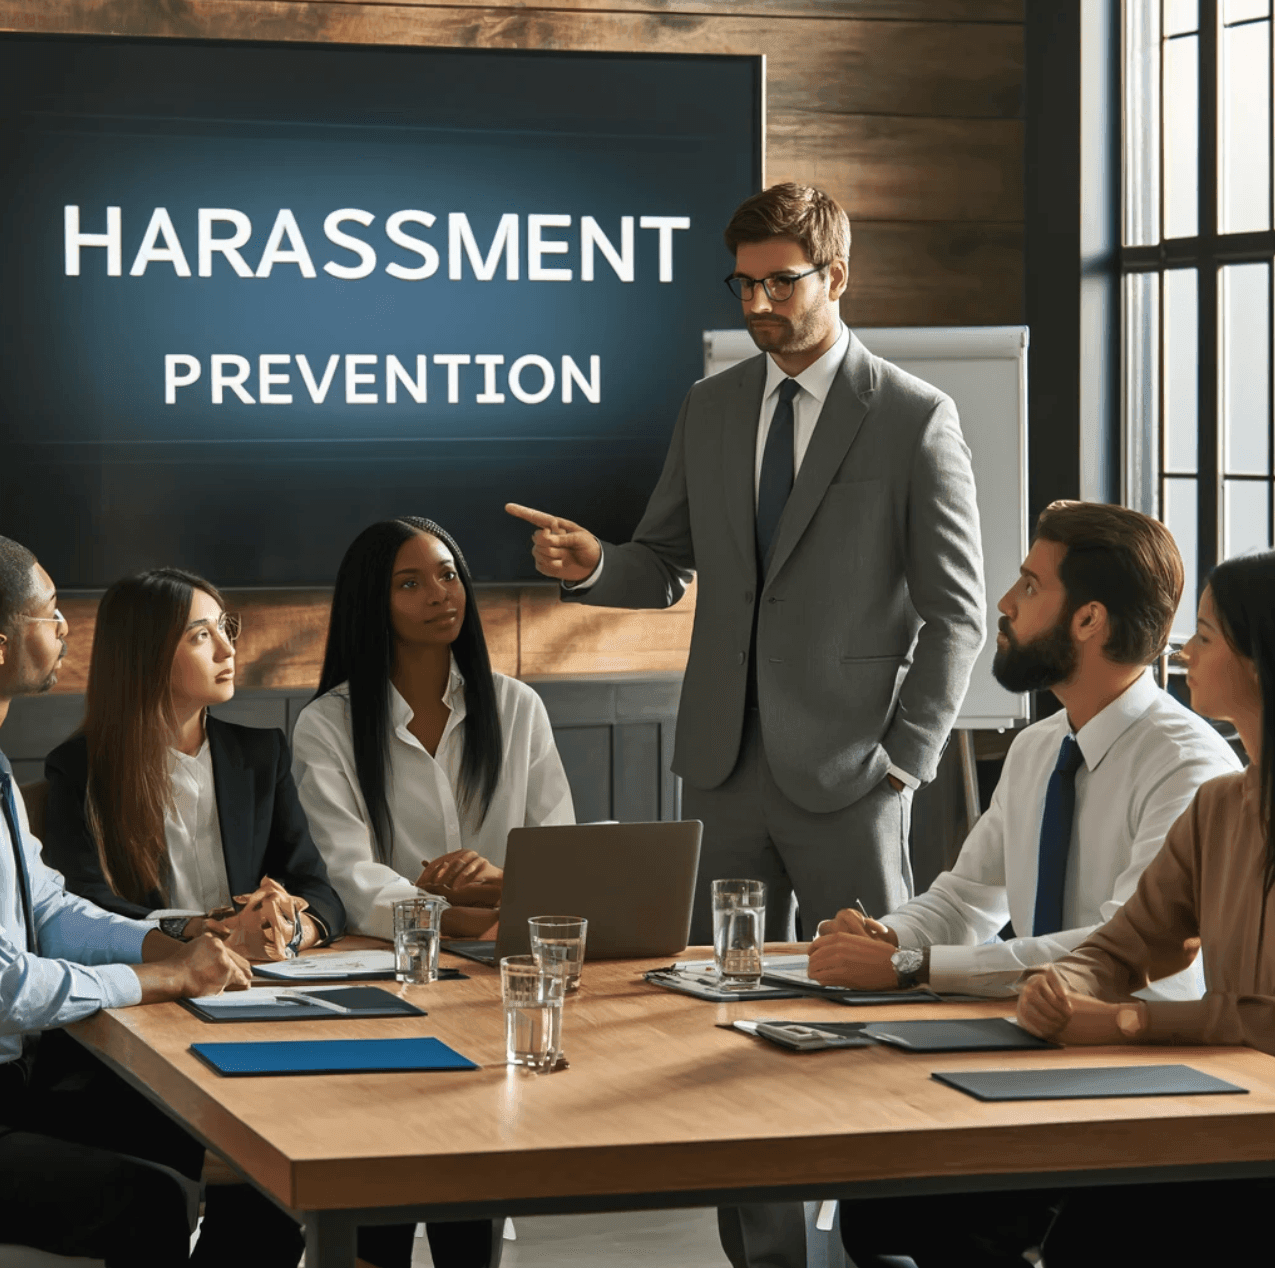 Harassment Prevention Programs